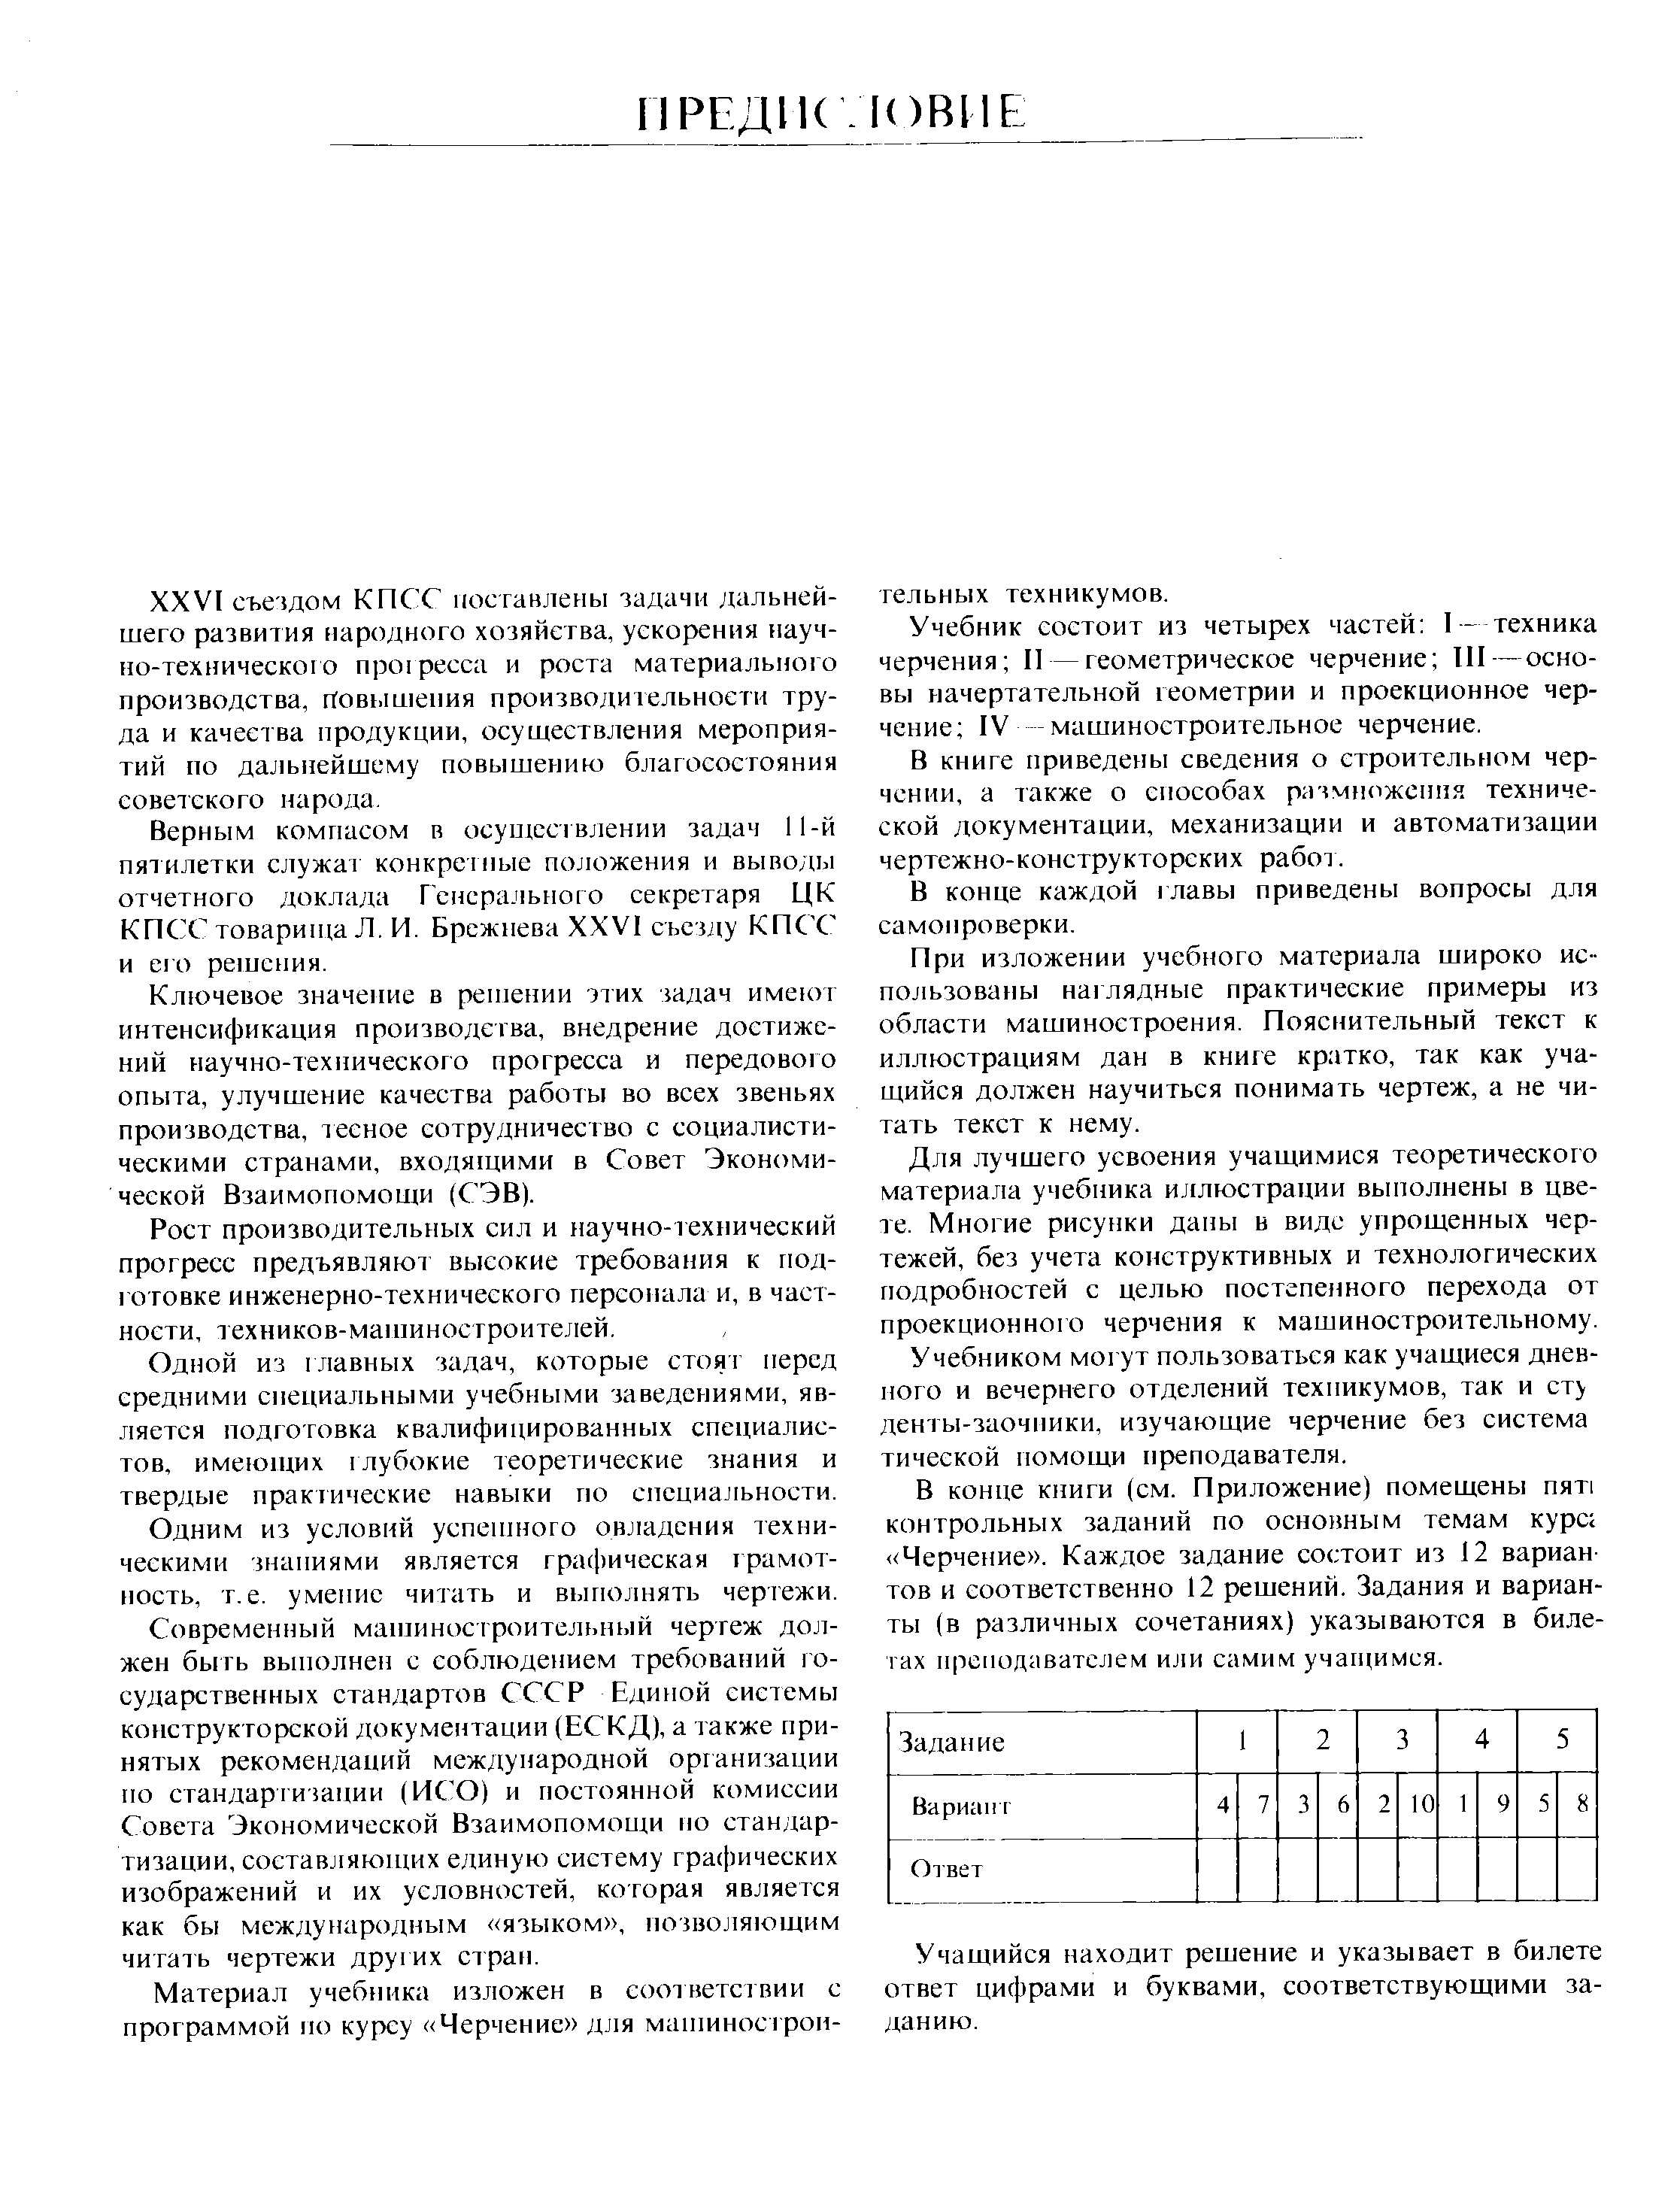 Учебник состоит из четырех частей I - техника черчения II — геометрическое черчение III—основы начертательной геометрии и проекционное черчение IV машиностроительное черчение.
